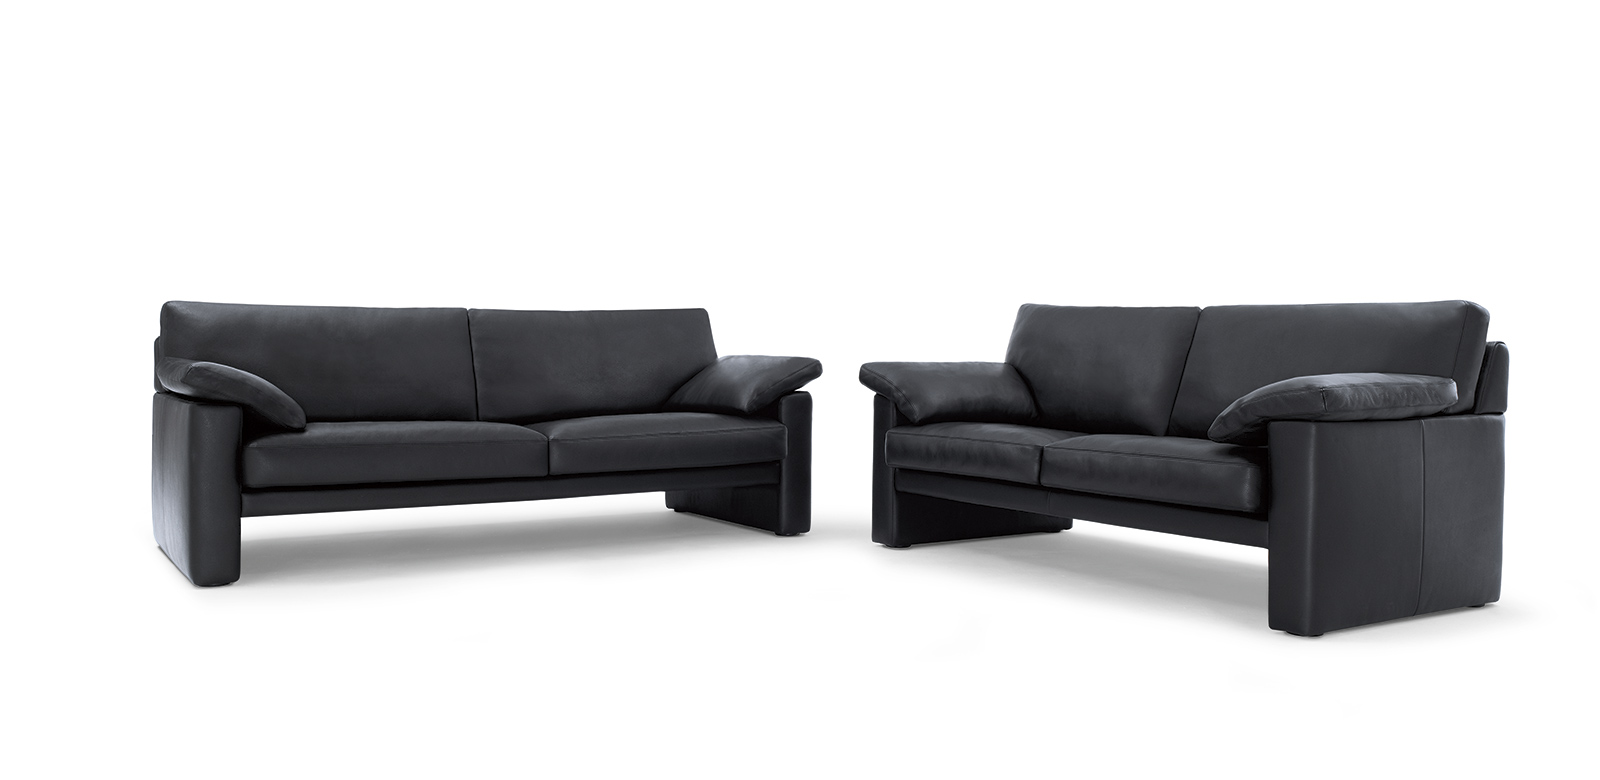 CL300 vrijstaande sofa's in zwart leer met armleuningkussens.